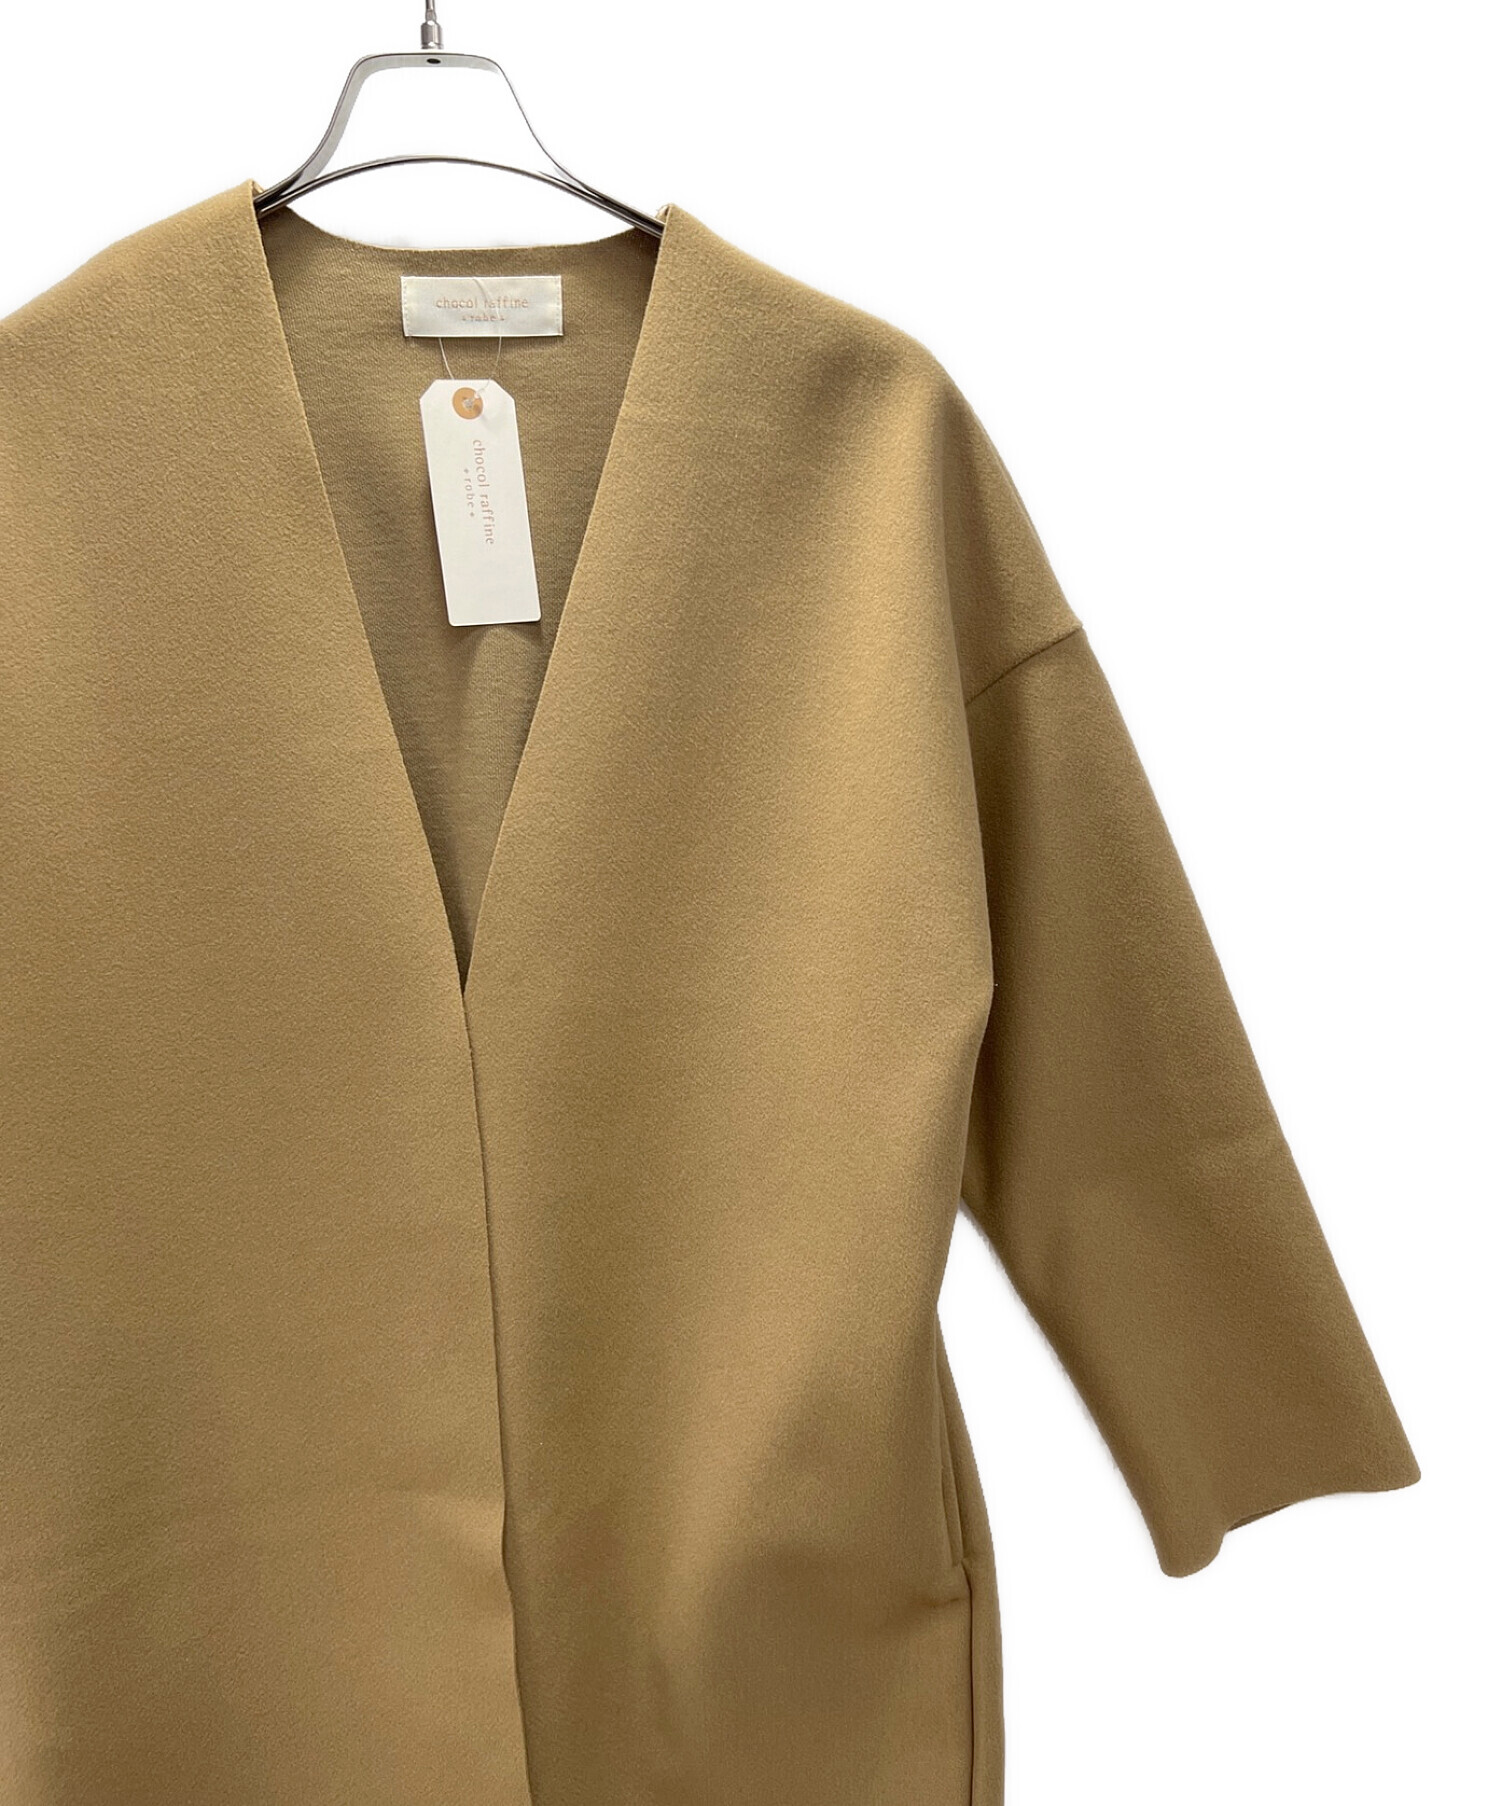 chocol raffine robe (ショコラフィネローブ) ノーカラーロングコート ベージュ サイズ:SIZE FREE 未使用品